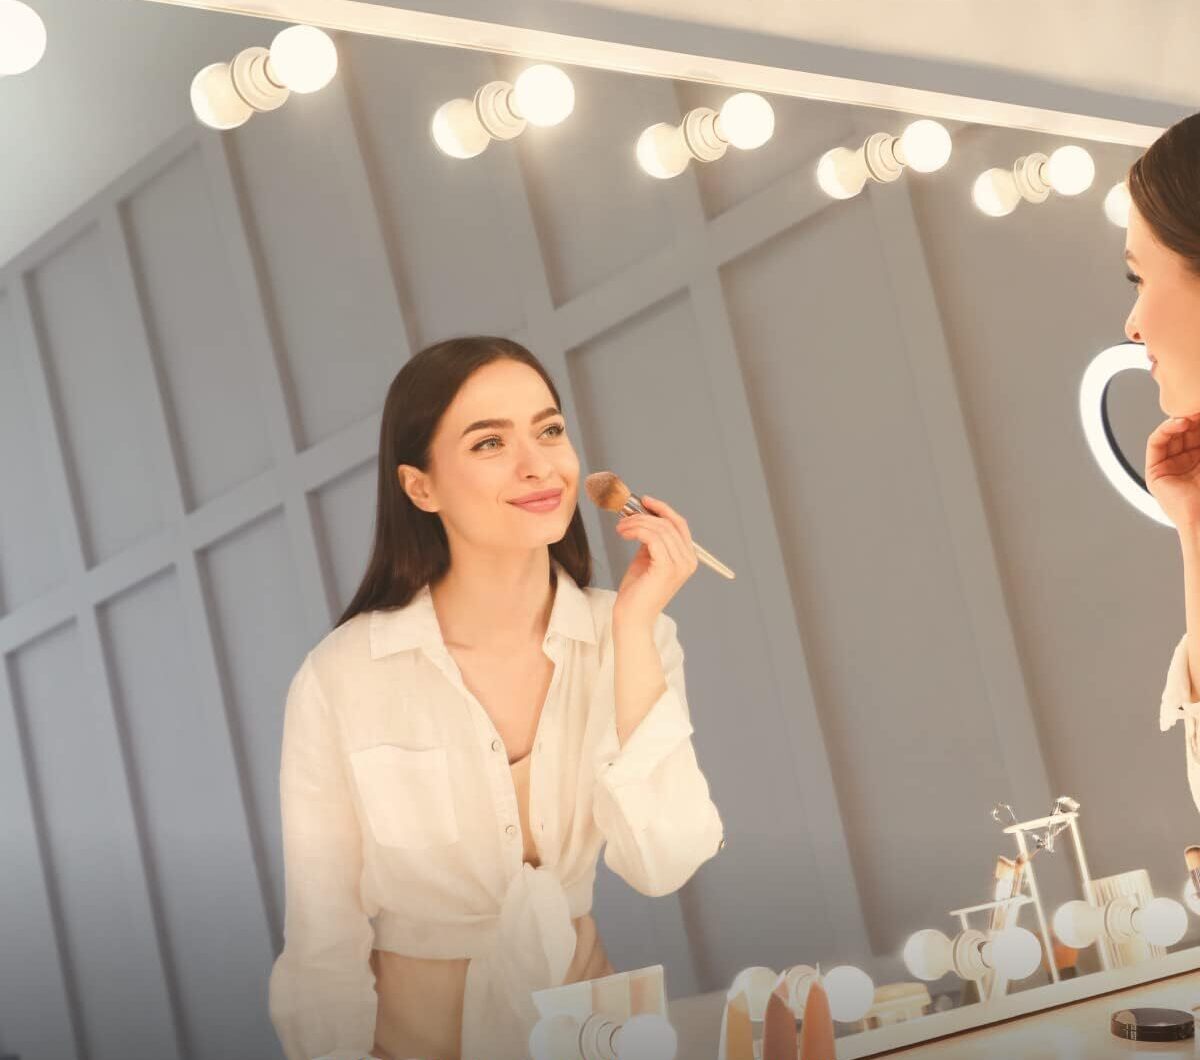 The-10-Best-Bathroom-Light-Bulbs-For-Makeup-TN